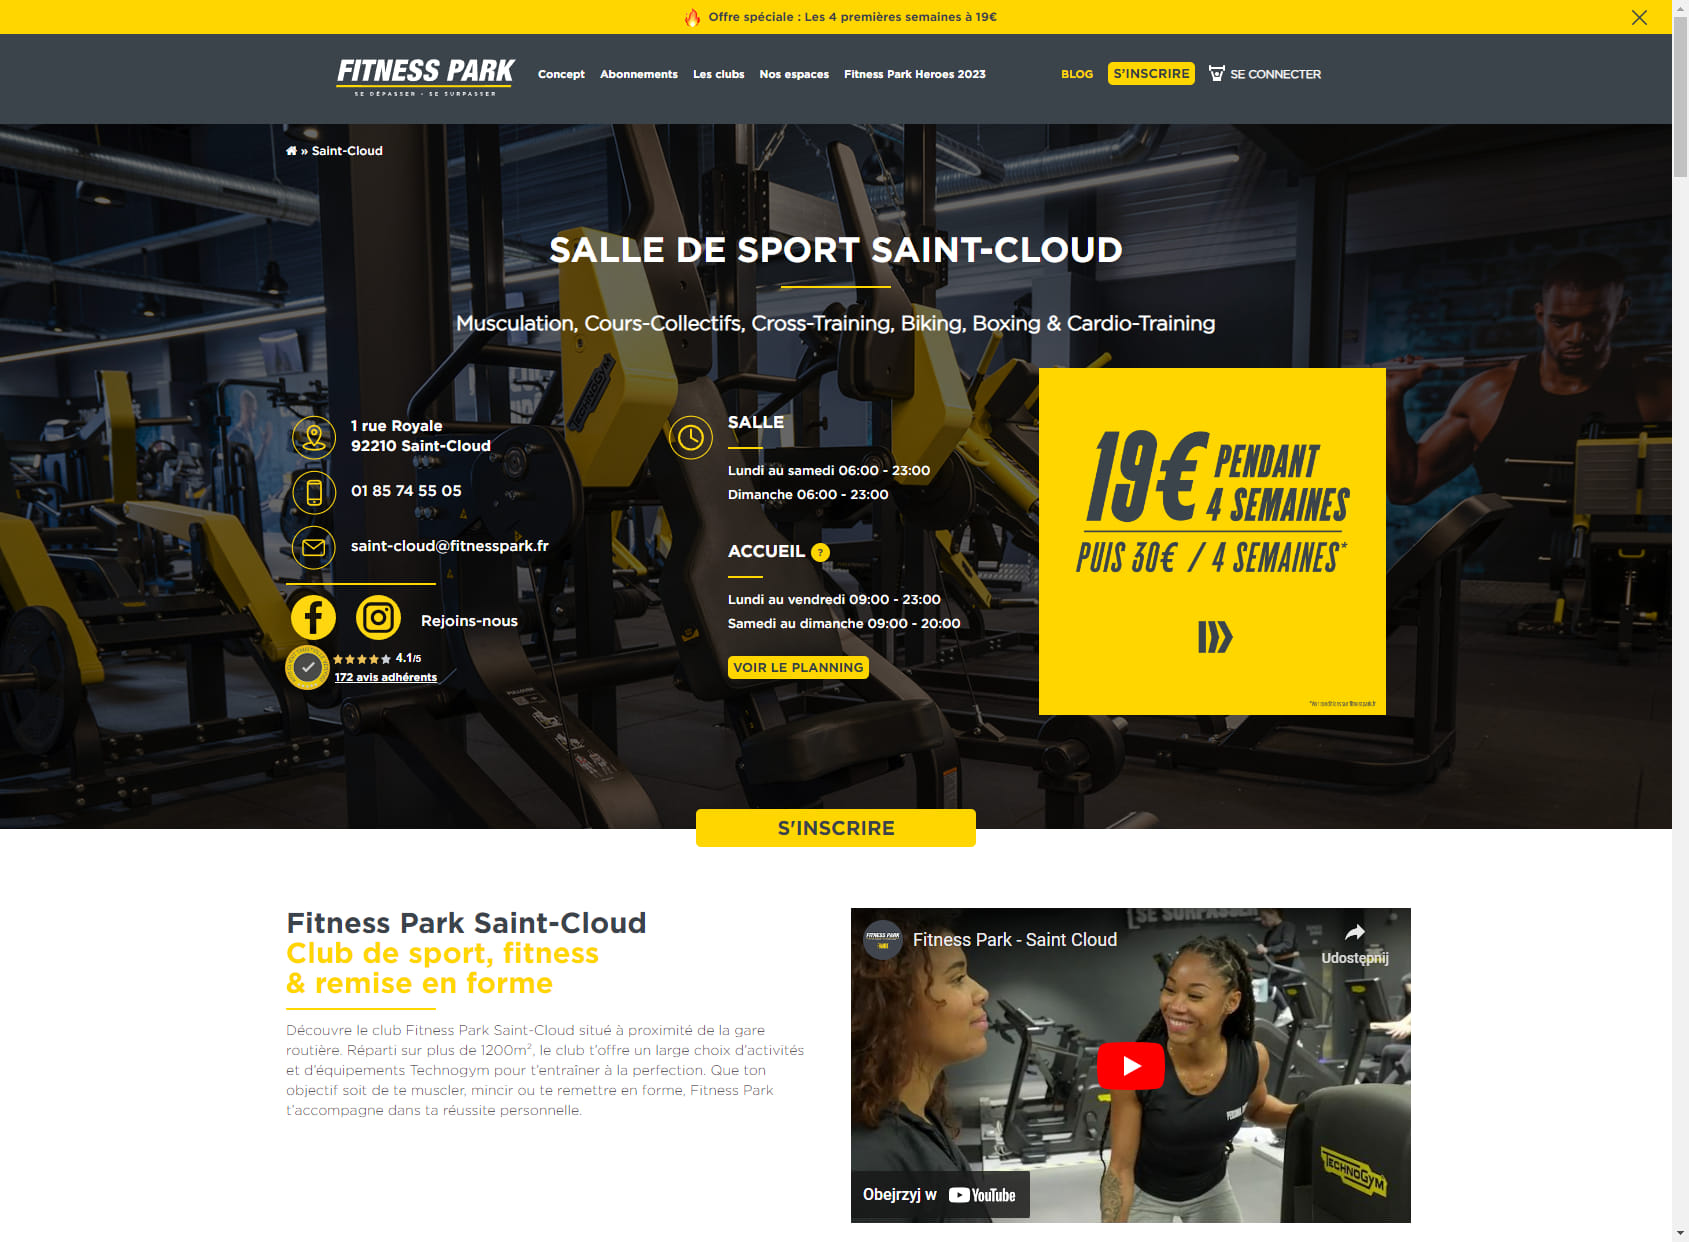 Salle de sport Saint-Cloud - Fitness Park